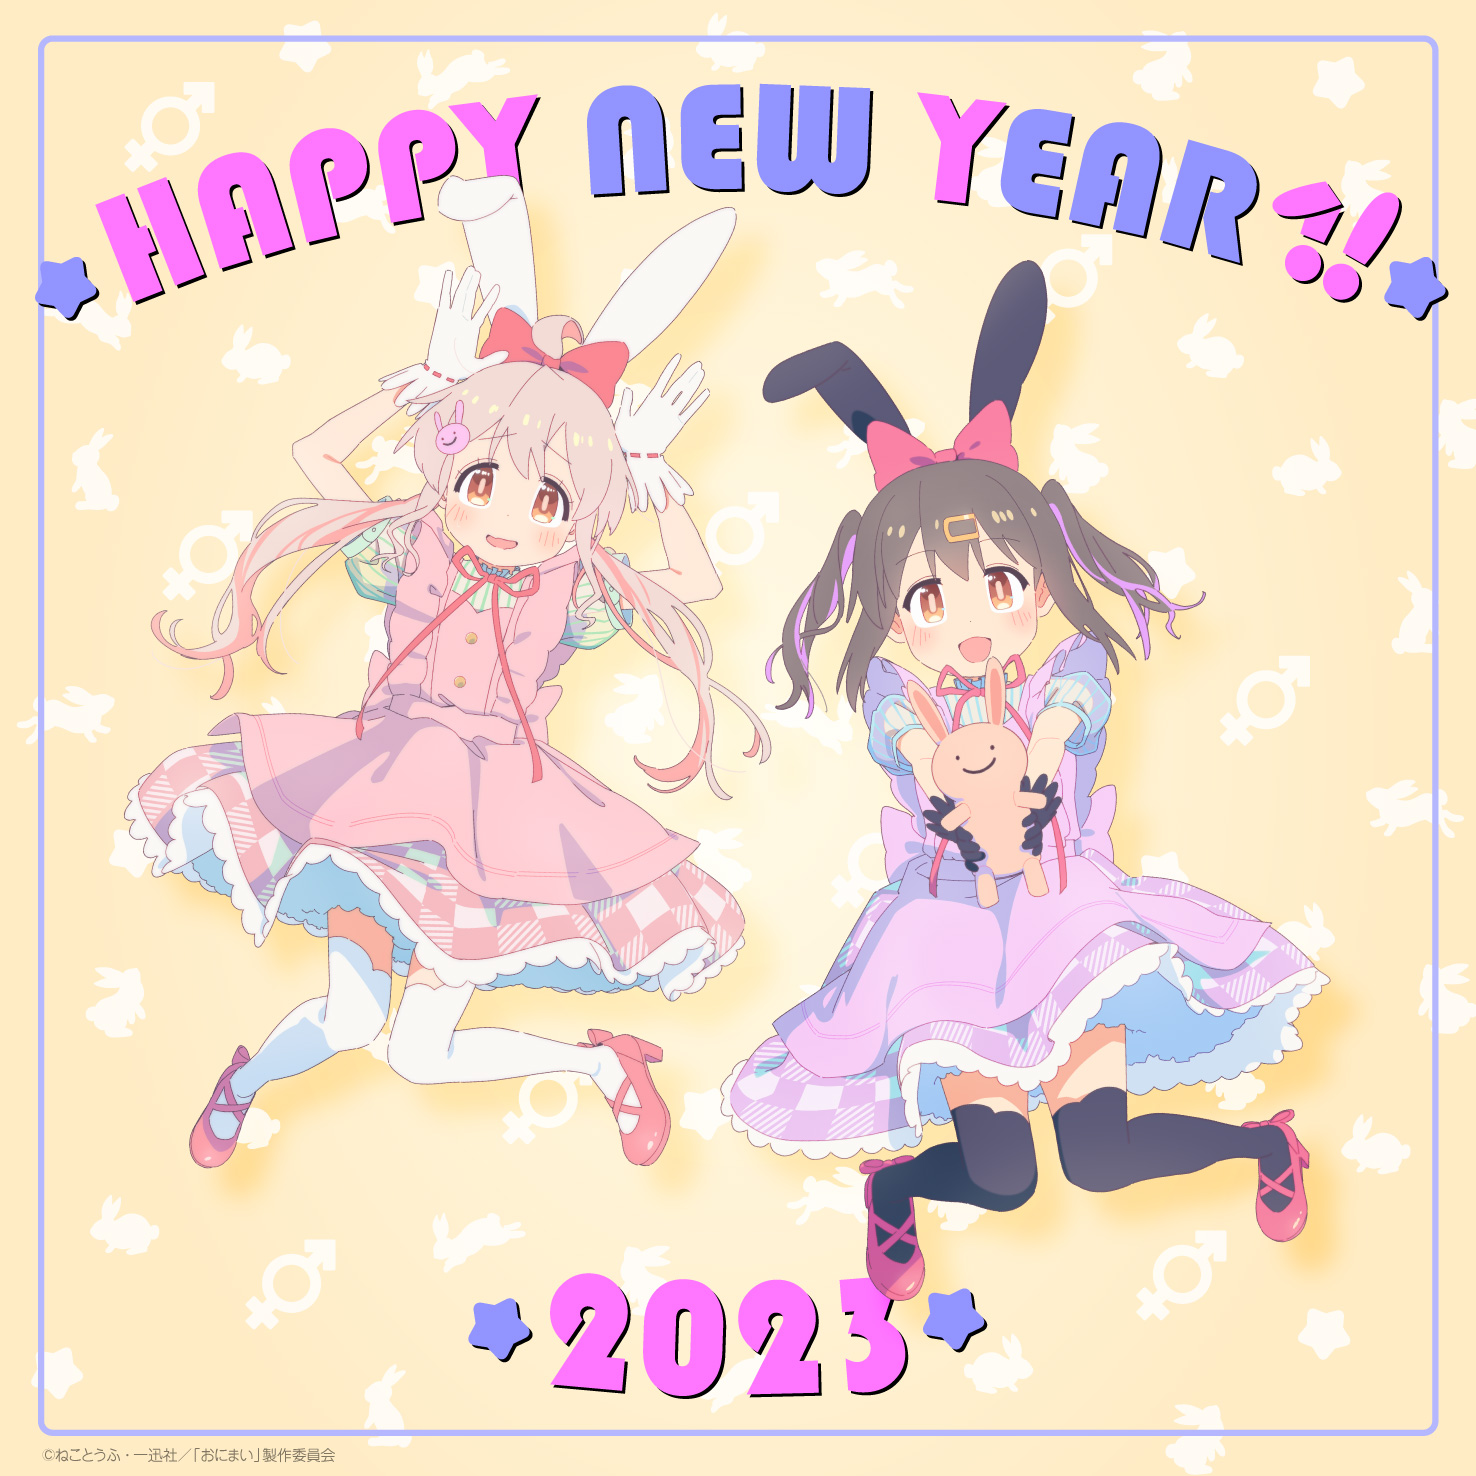 ONIMAI: Ahora soy tu hermana 2023 Arte de Año Nuevo